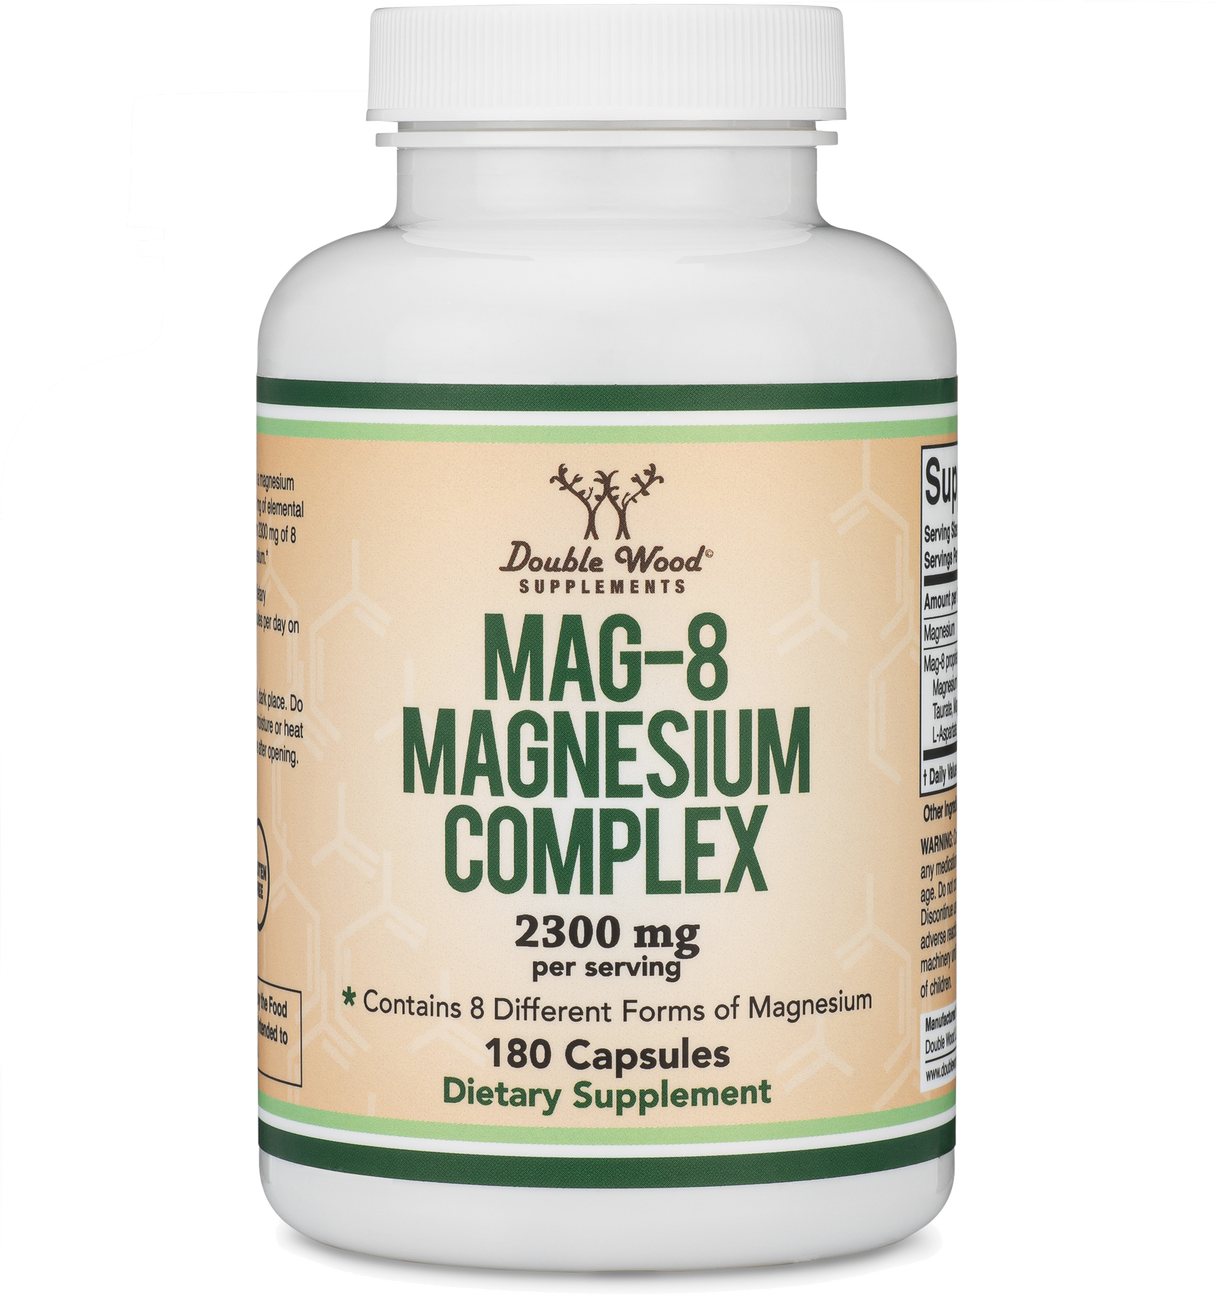 Magnesium Complex (MAG-8)